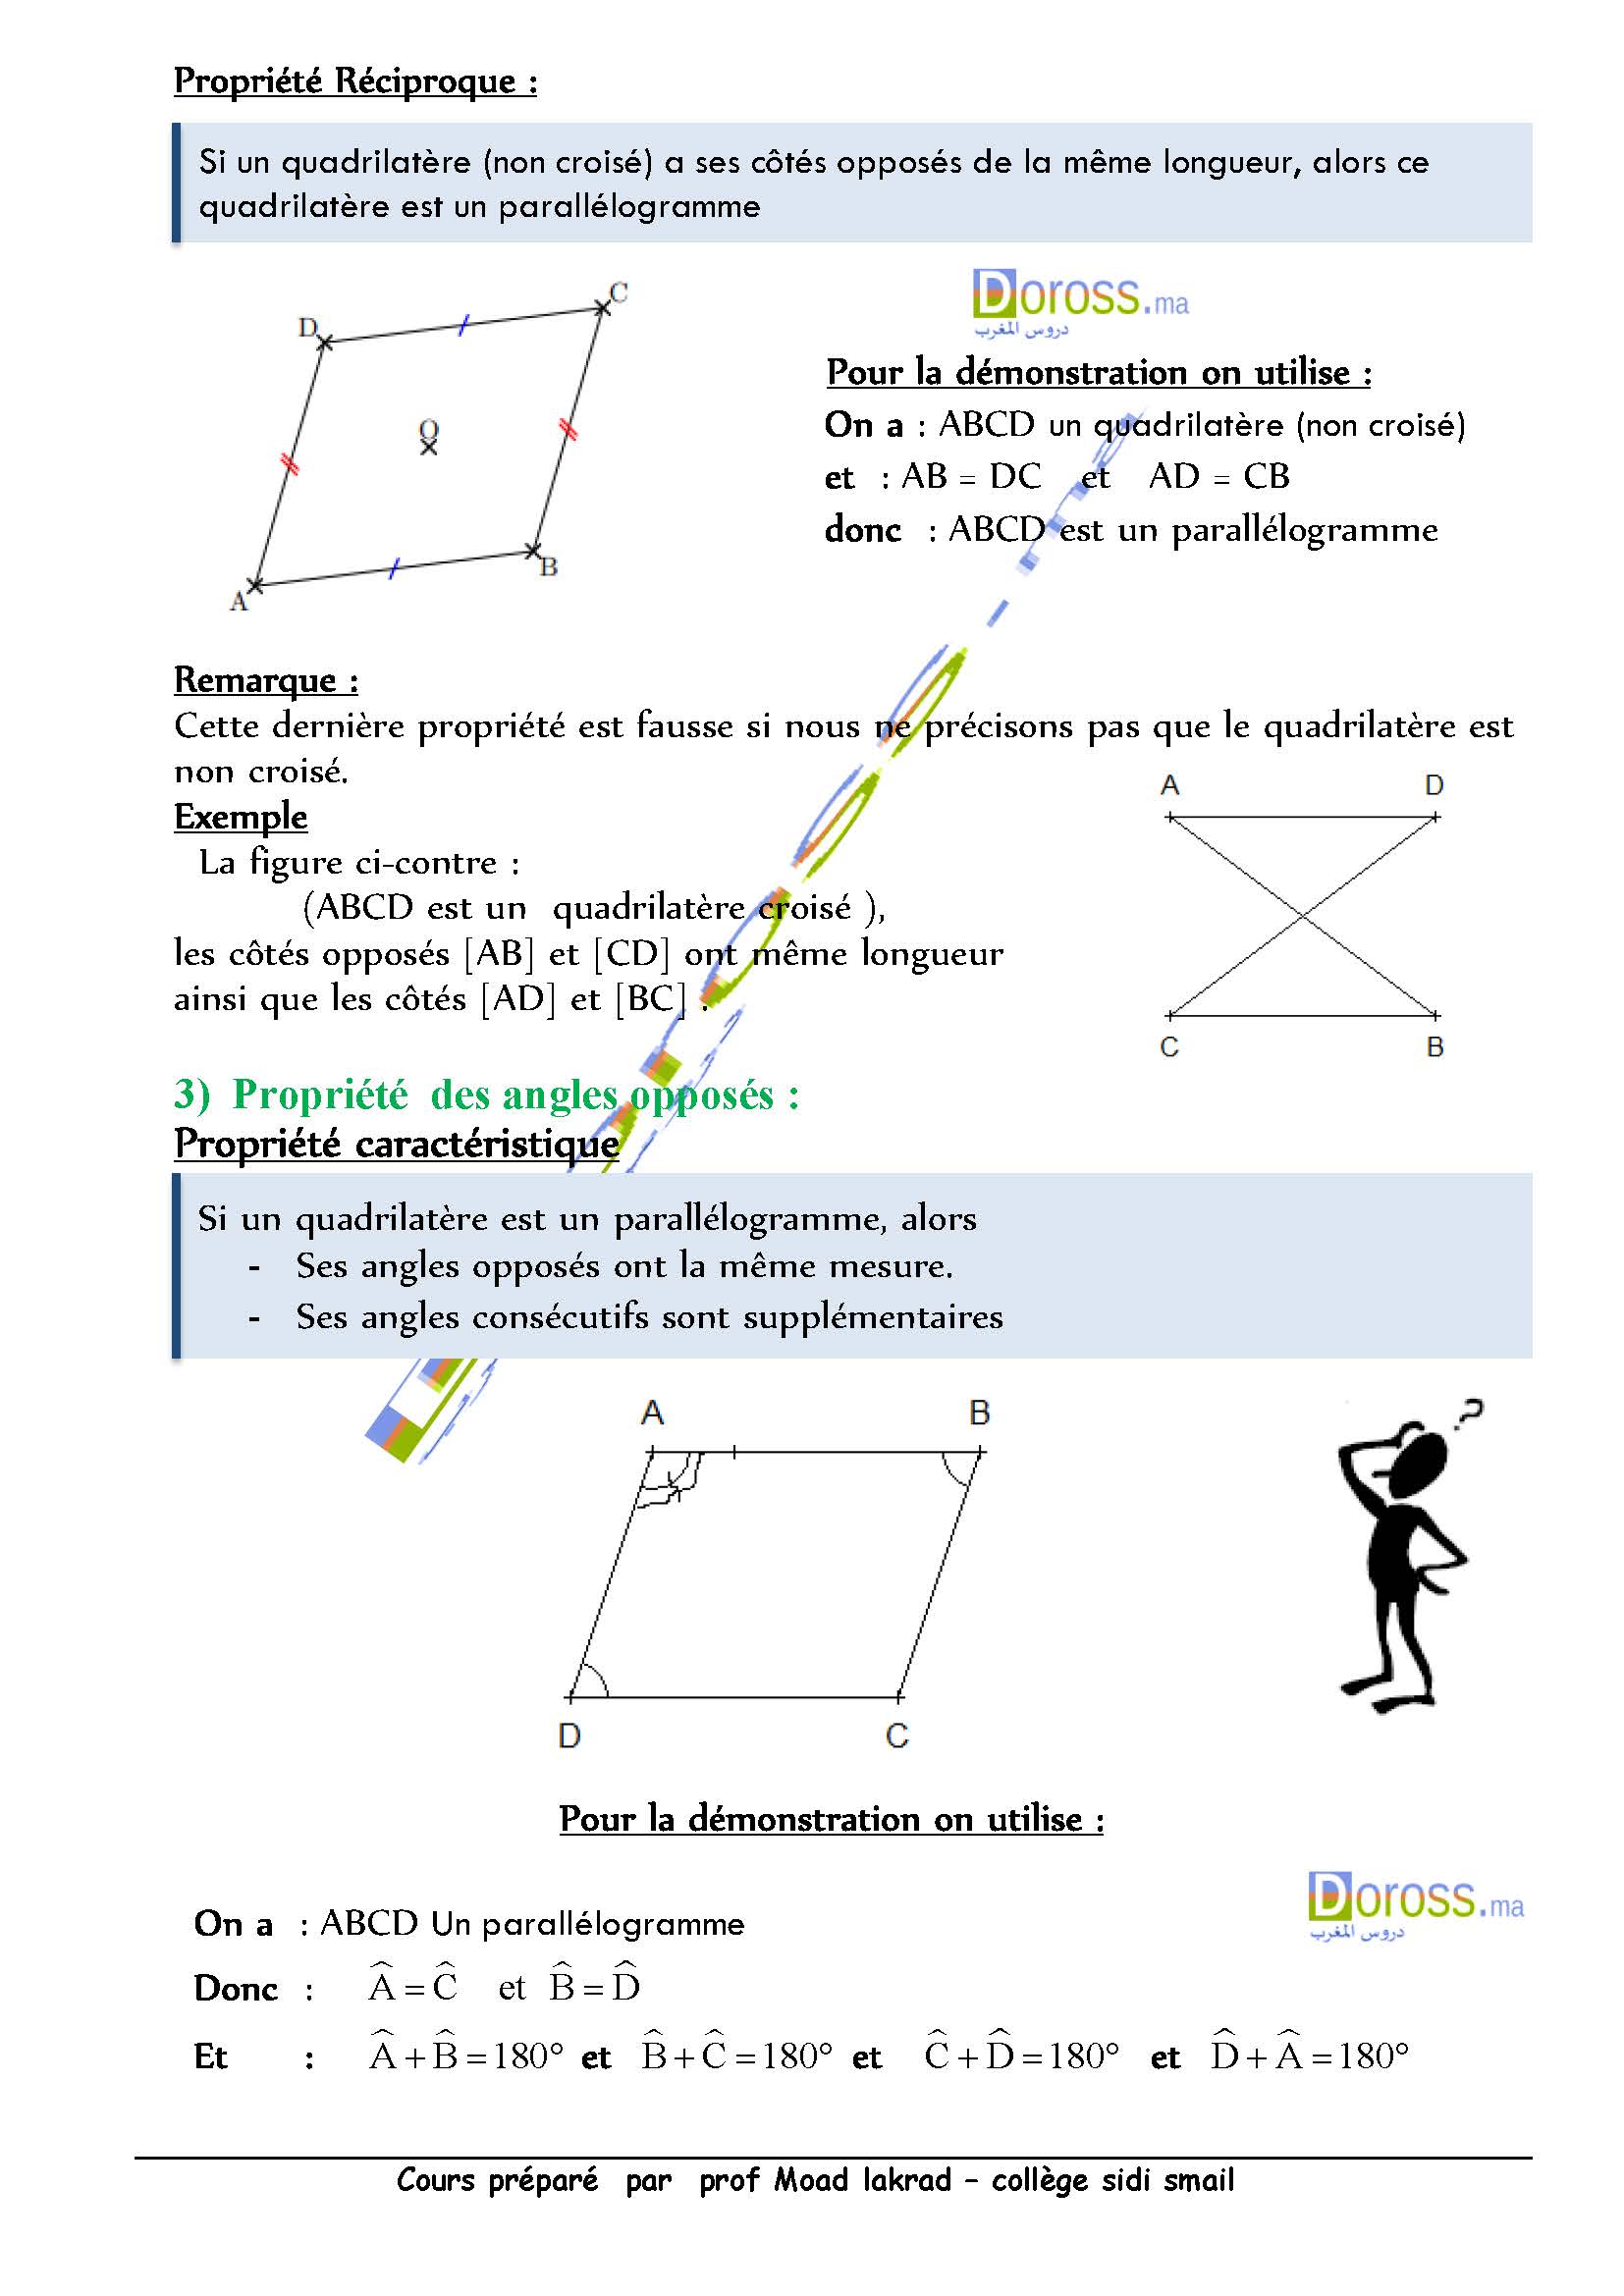 دروس الرياضيات :Parallélogramme| الأولى خيار فرنسي 